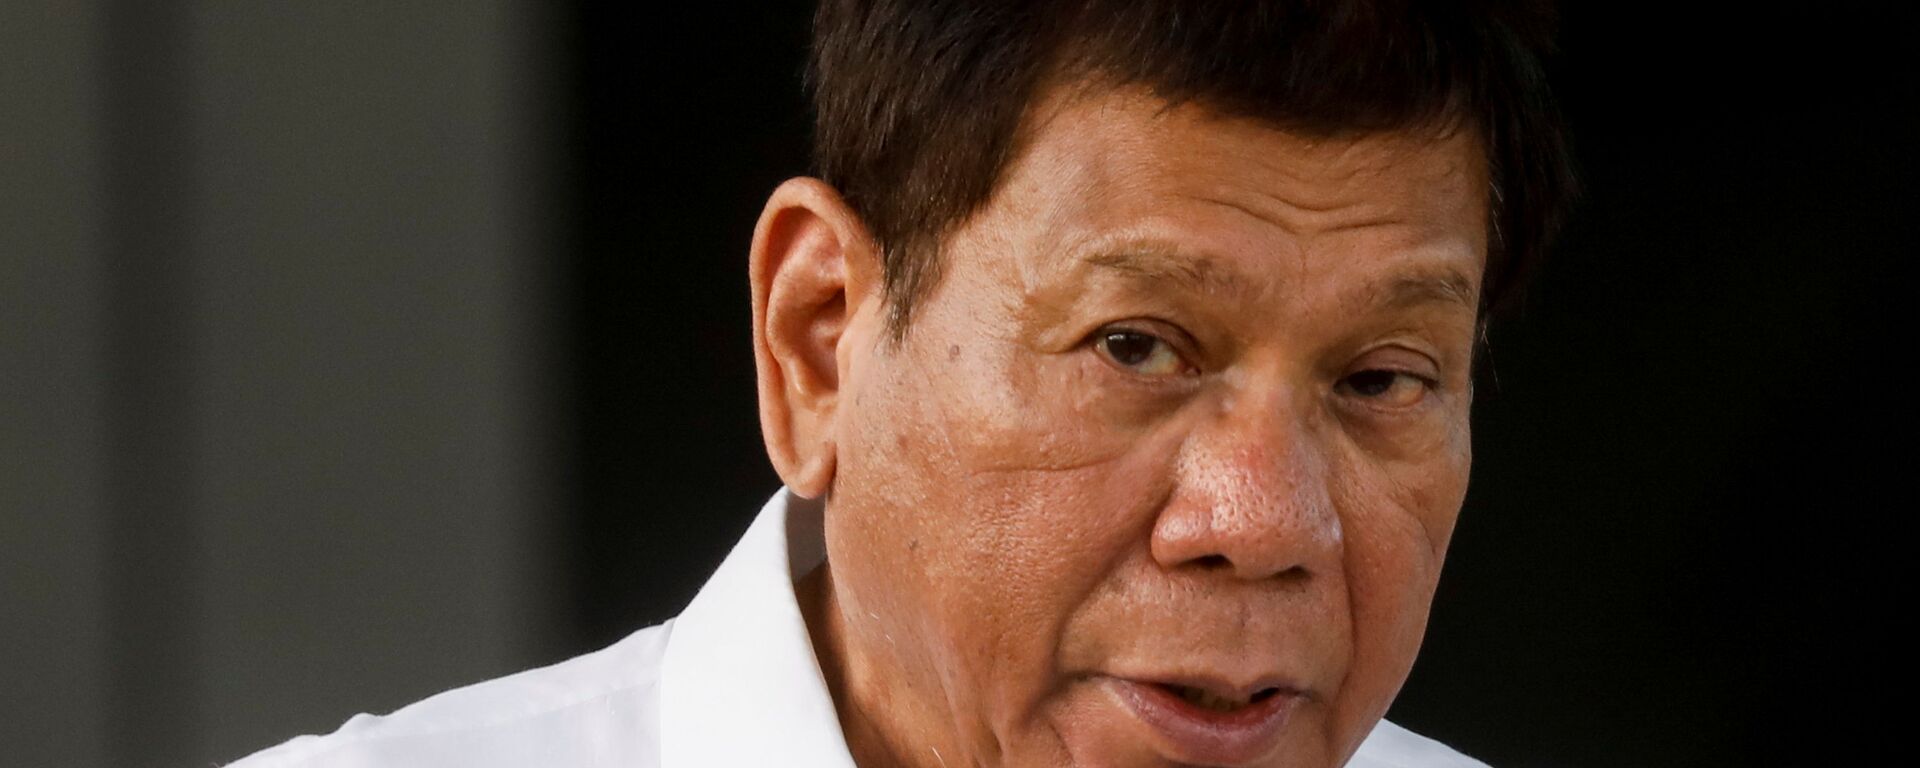 Tổng thống Philippines Rodrigo Duterte phát biểu trong buổi lễ đưa vắc xin COVID-19 đầu tiên đến đất nước, tại Căn cứ Không quân Villamor ở Pasay, Metro Manila, Philippines, ngày 28 tháng 2 năm 2021 - Sputnik Việt Nam, 1920, 02.03.2021